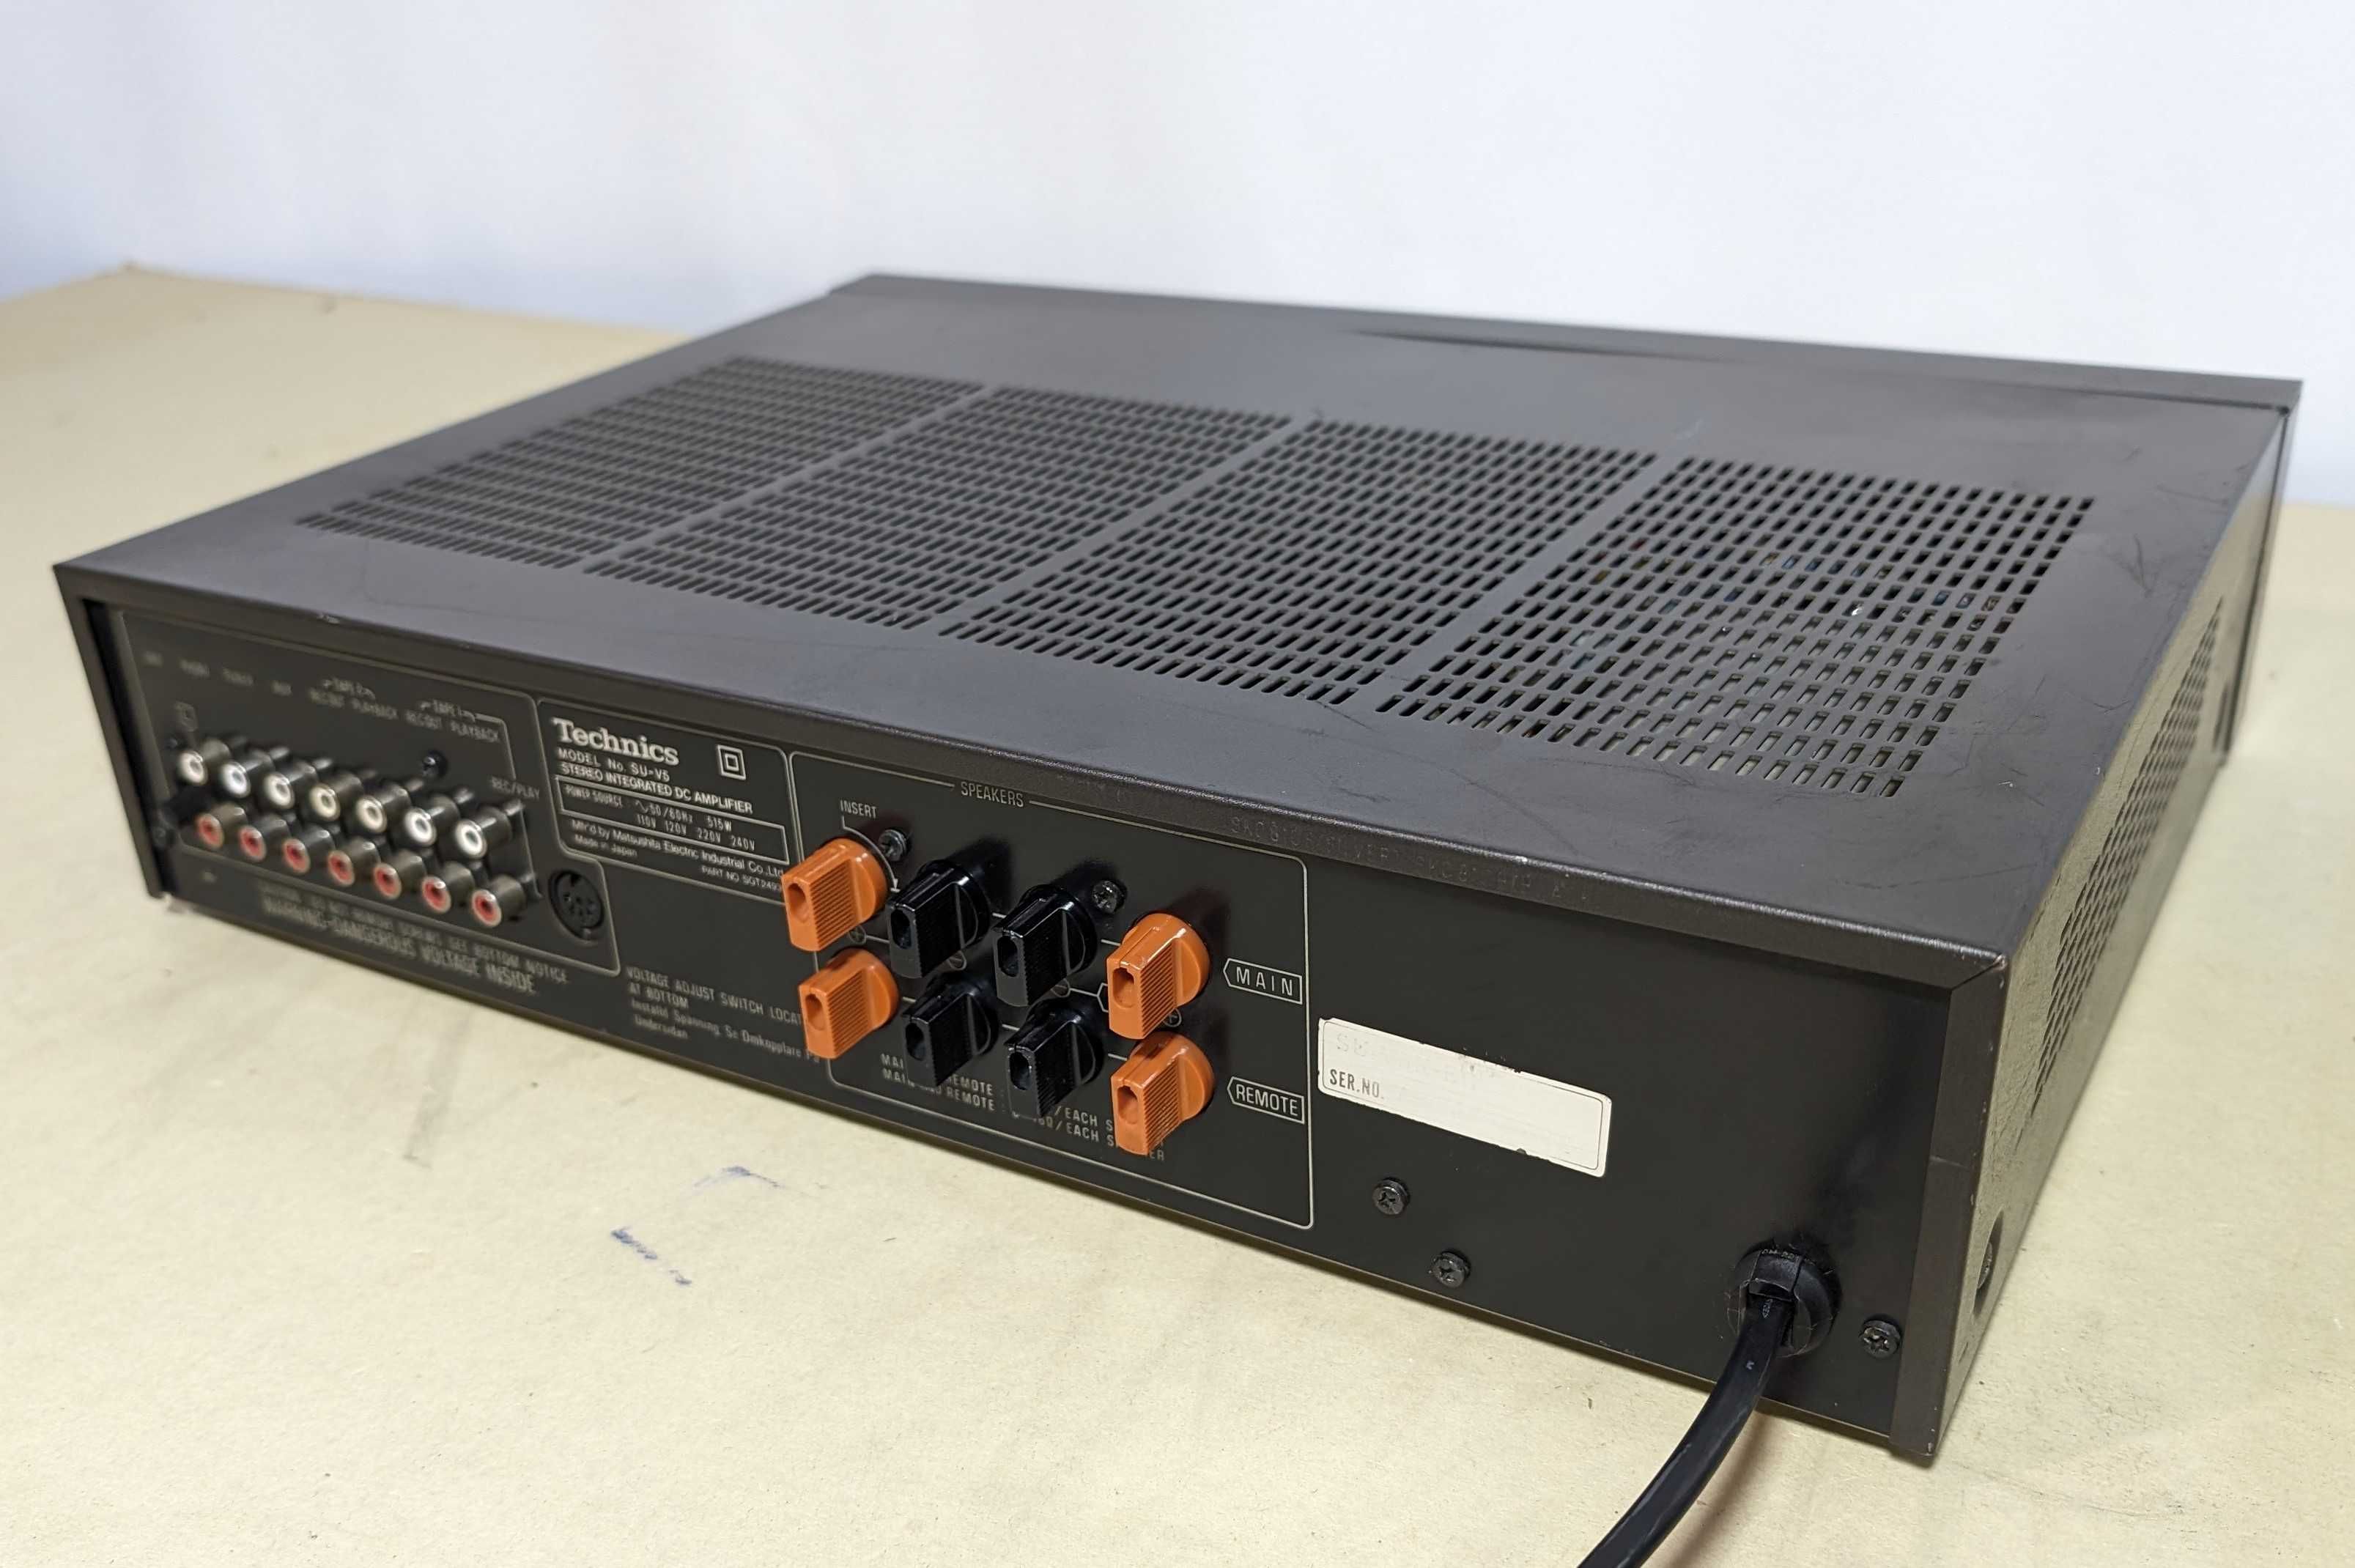 Підсилювач Technics SU-V5,транзисторний,85 Вт на канал,4-16 Ом,Японець